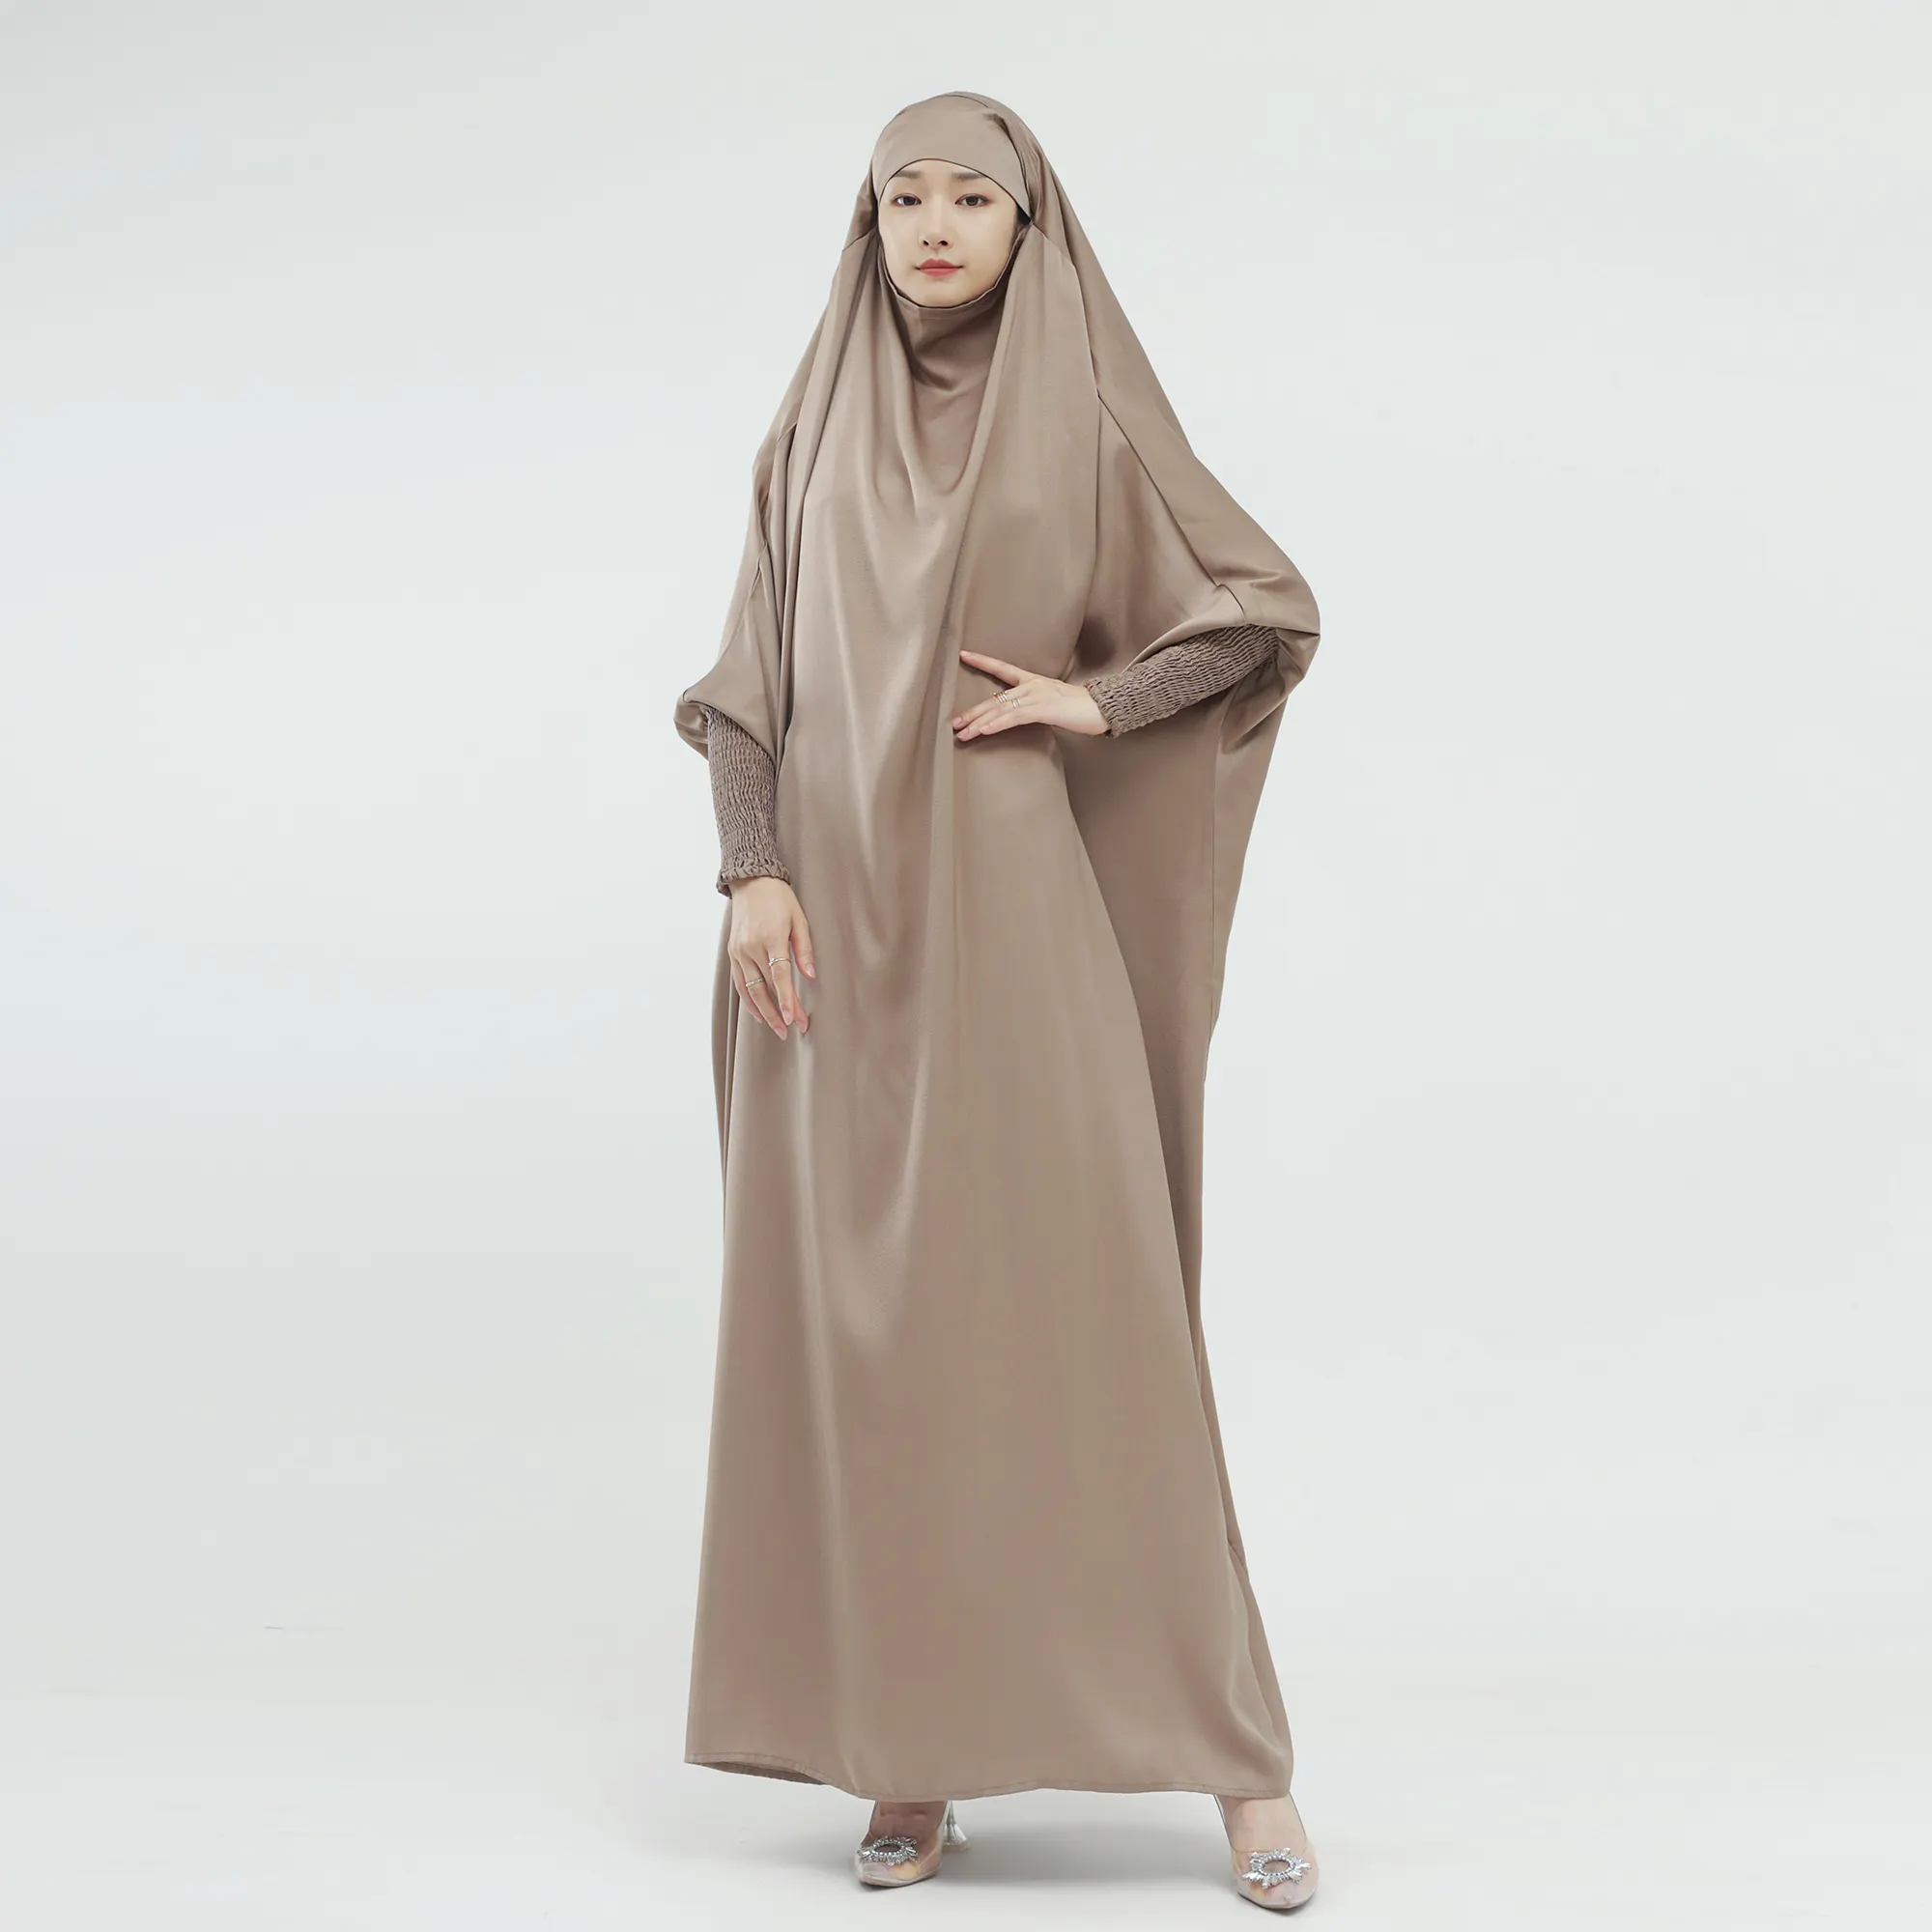 ملابس عيد المسلمين قطعة واحدة عباية للصلاة بطول كامل ثوب طويل فستان النساء عباية النساء المسلمات ثوب عباية